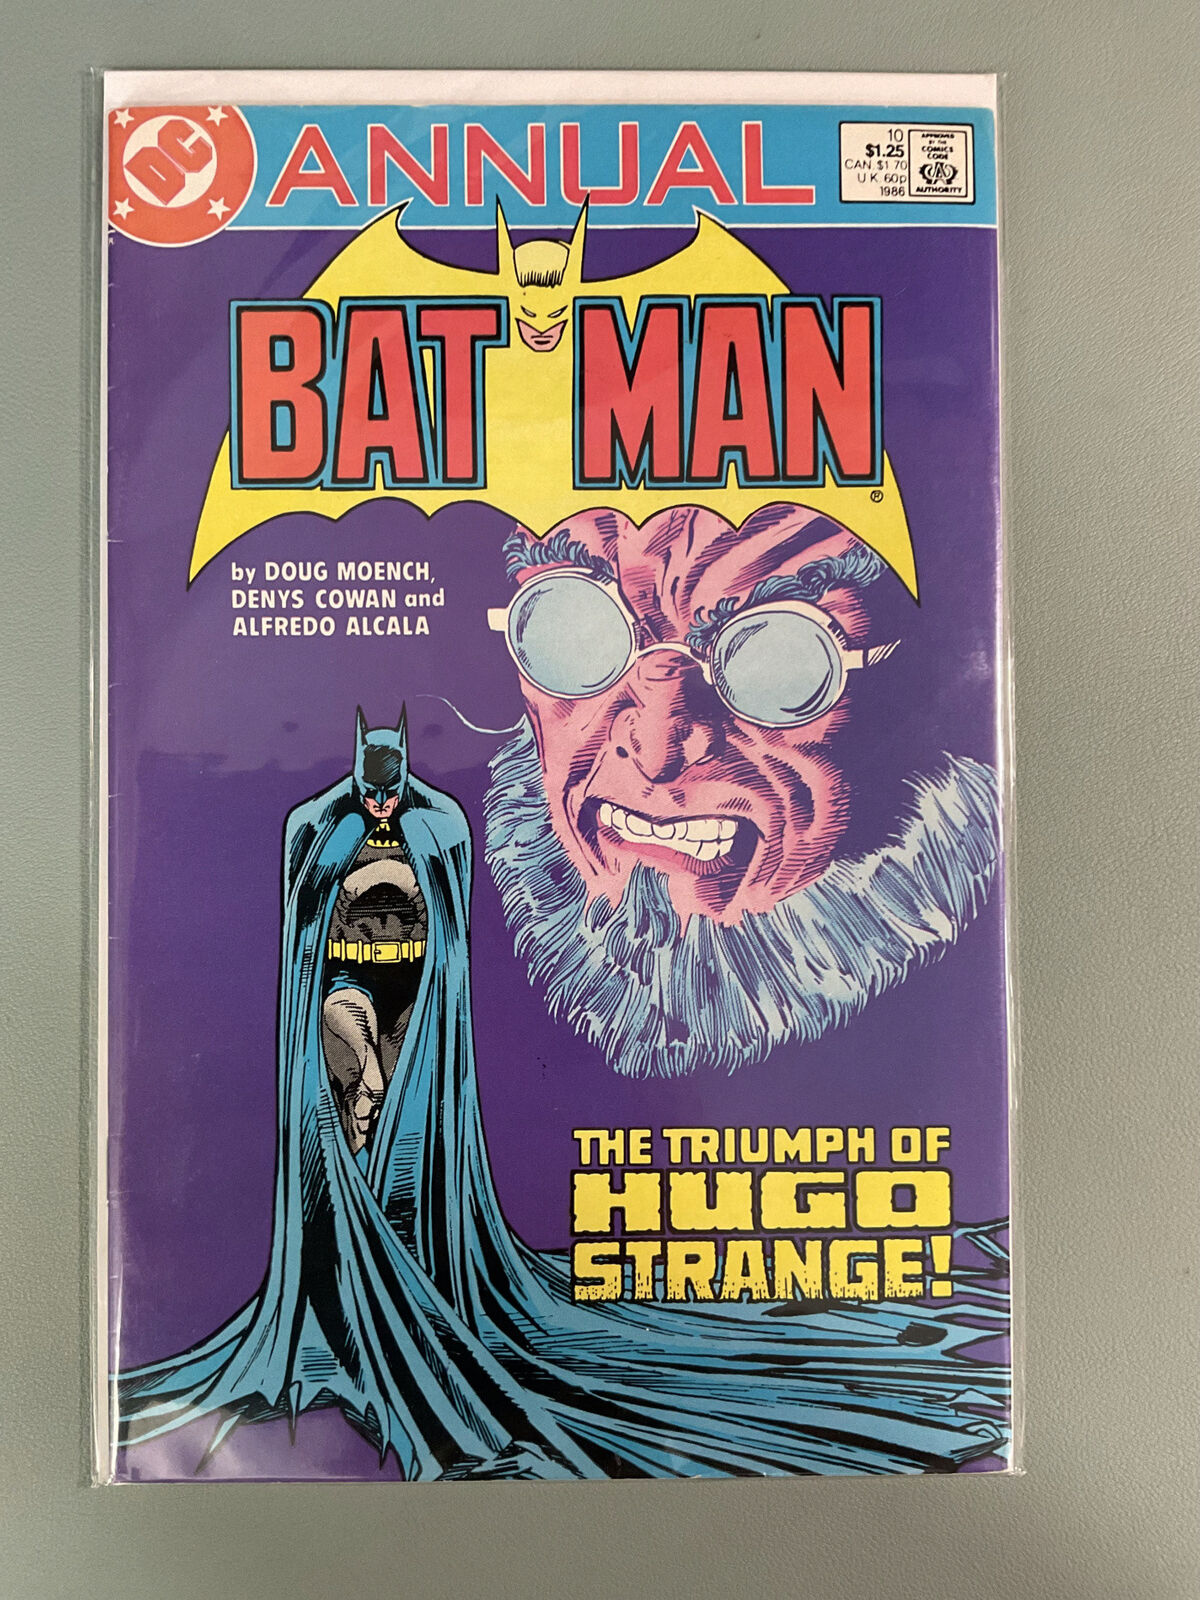 Batman(vol. 1) Annual #10 - DC Comics - Combine Shipping